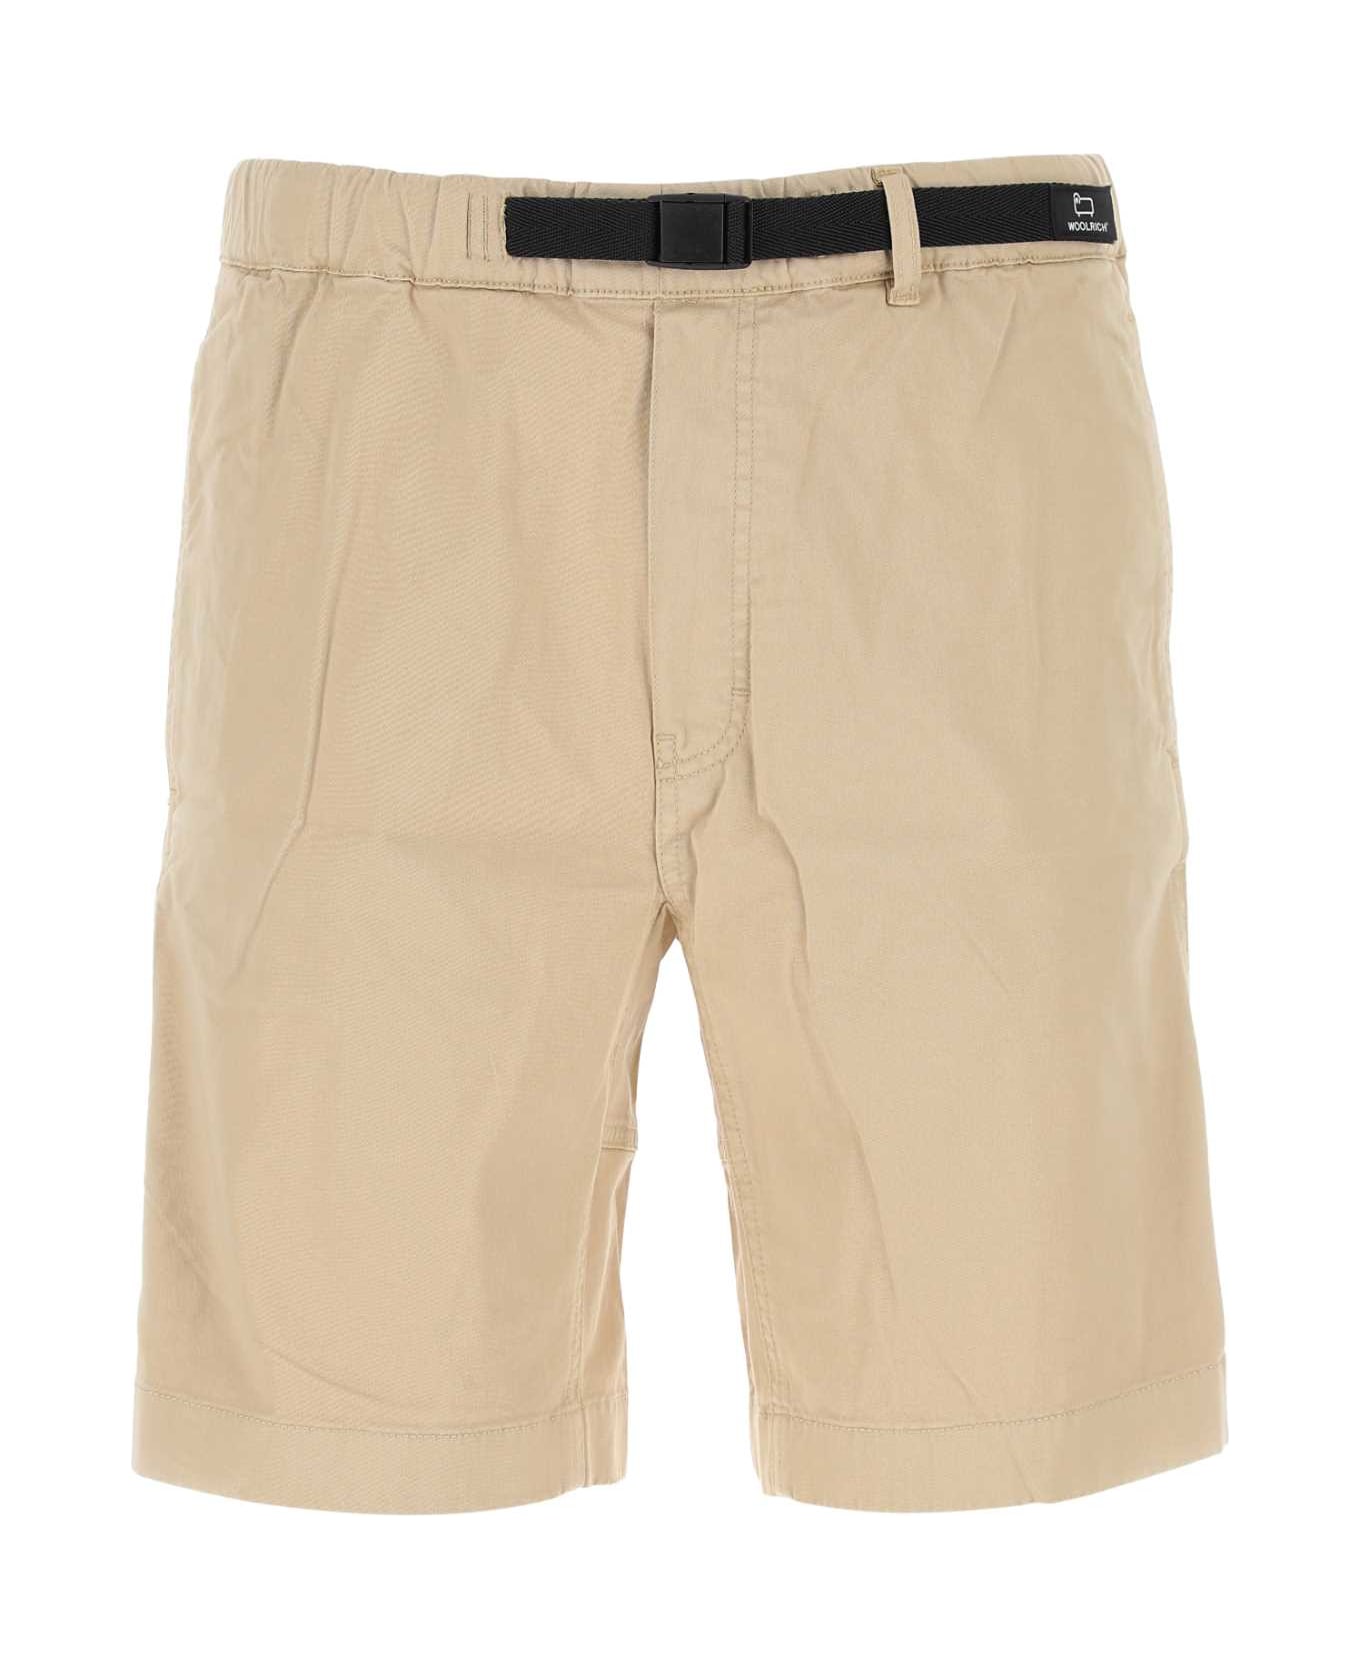 Woolrich Beige Stretch Cotton Bermuda Shorts - BEACHSAND